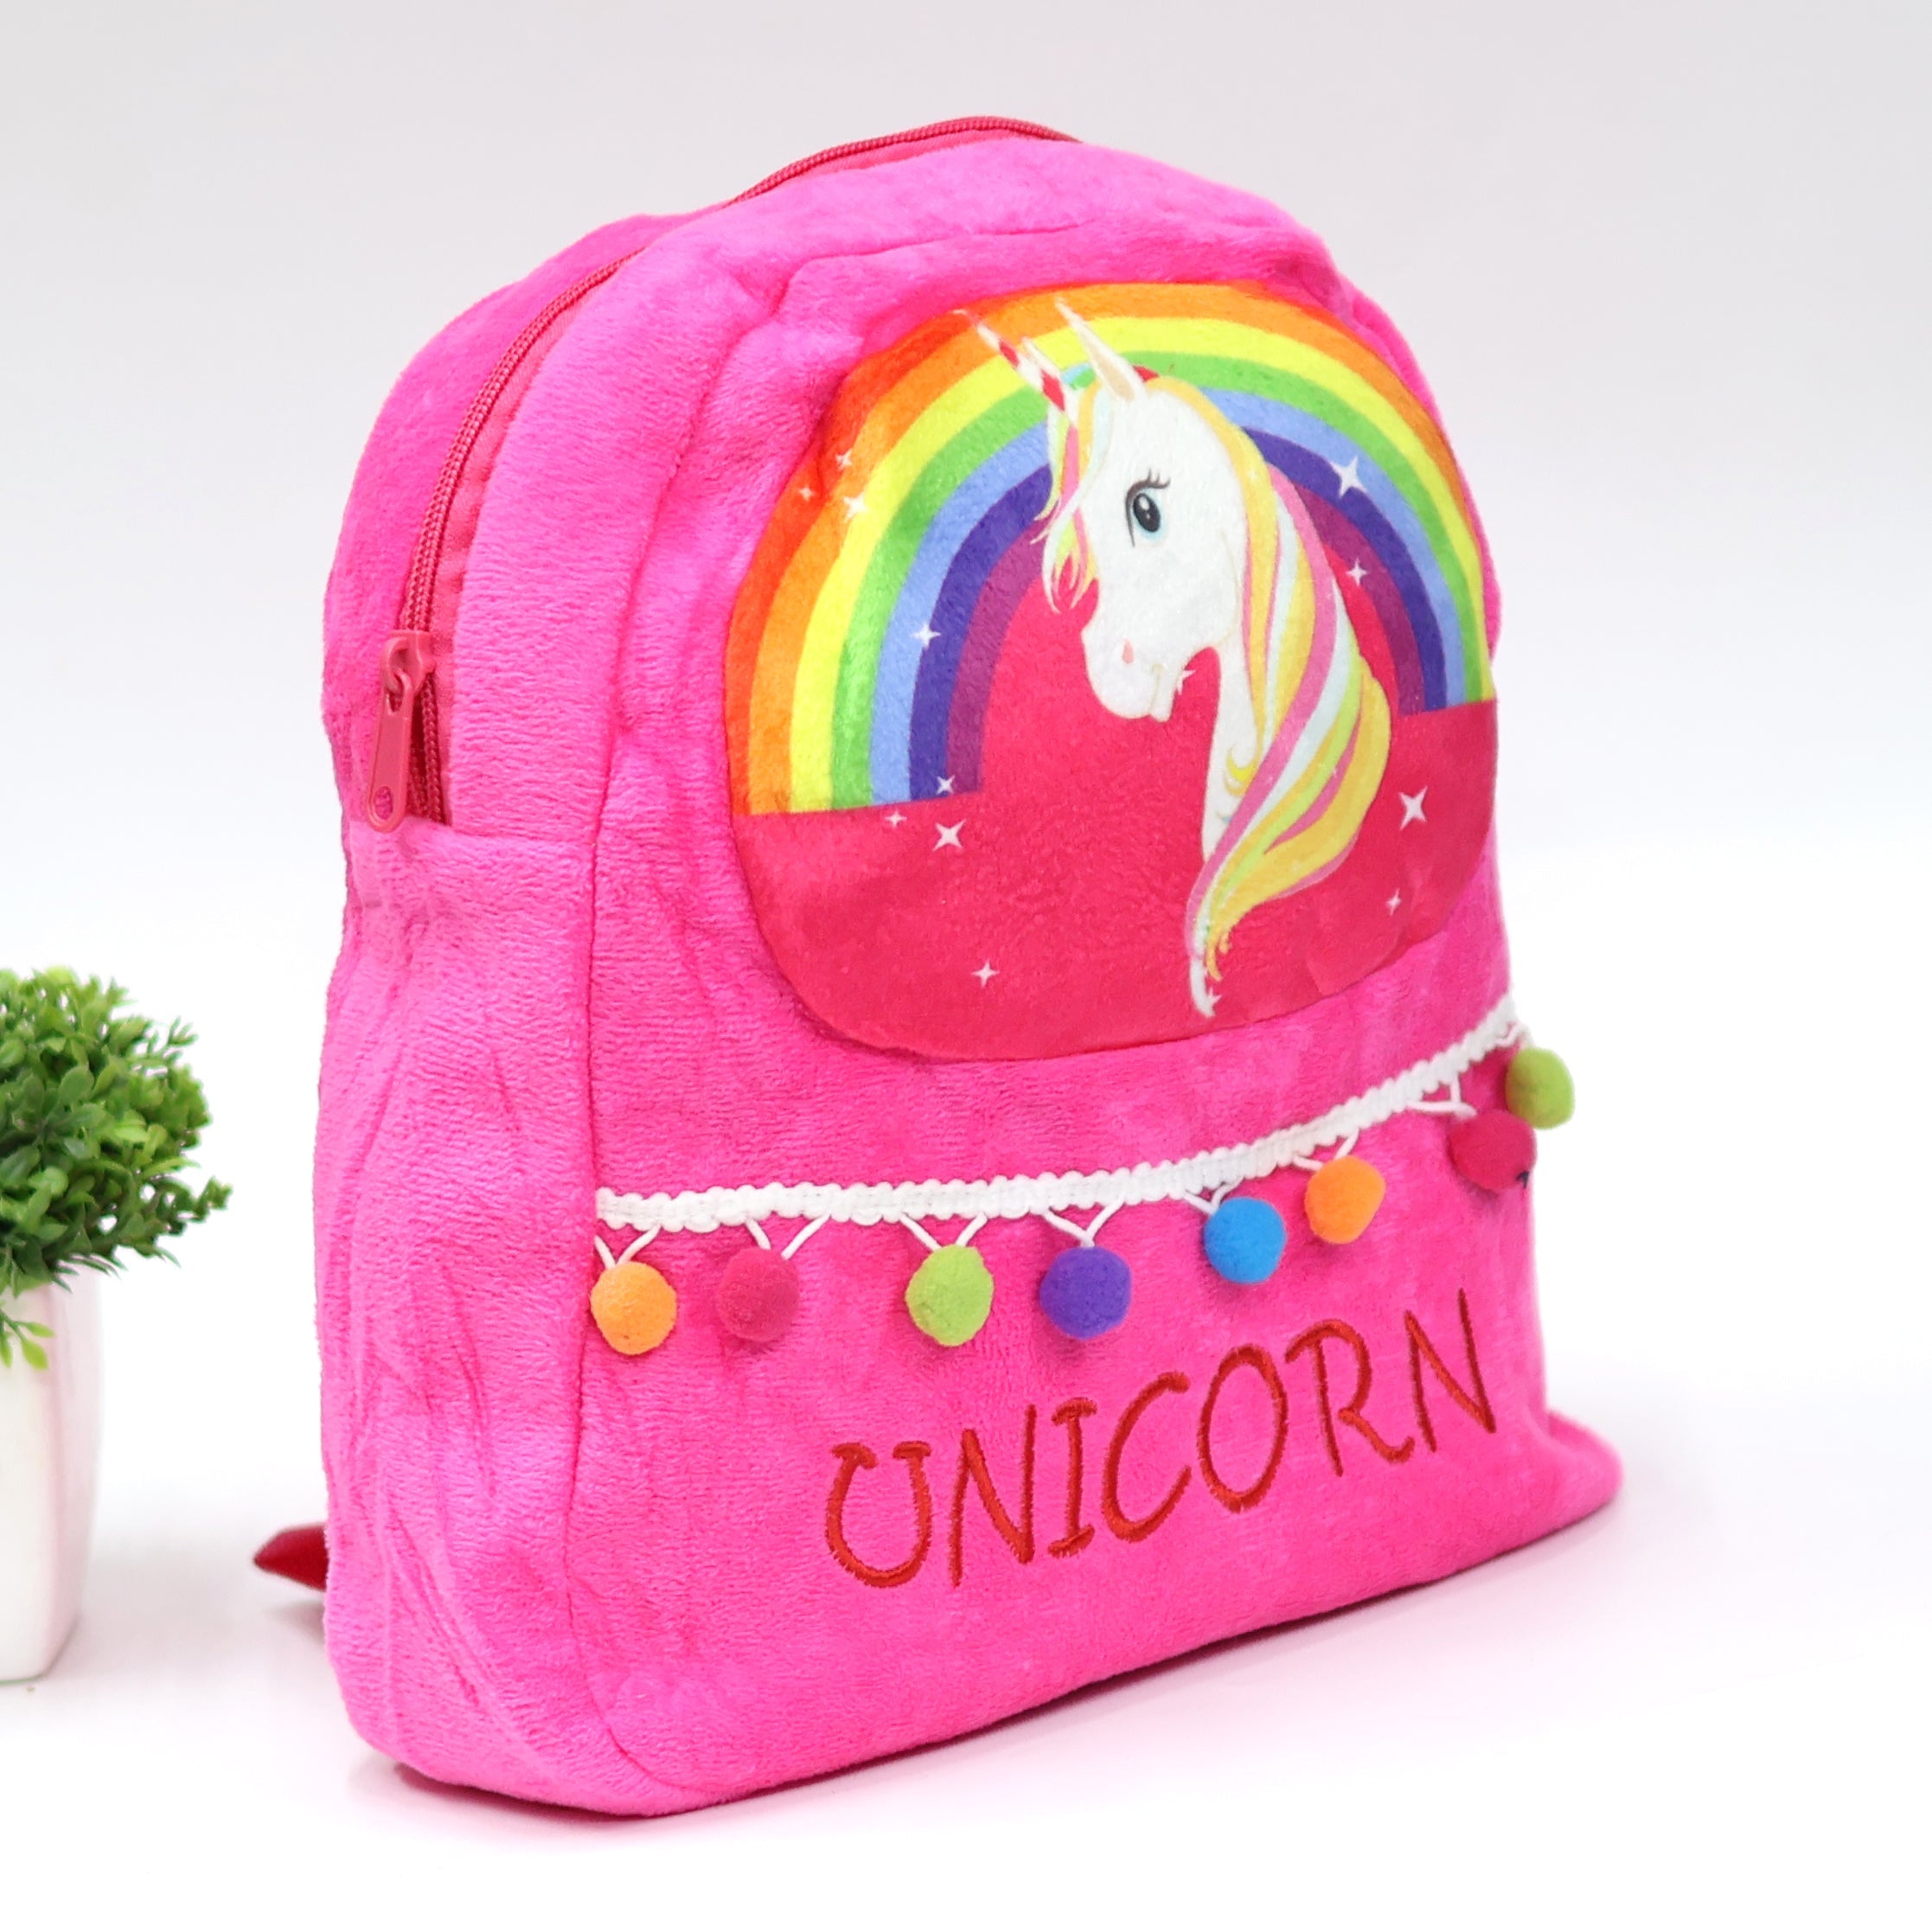 Kaushiki Enterprises Unicorn Casual Backpack Bag with LED Lights for Kids  16 L Backpack Pink, Blue - Price in India | Flipkart.com